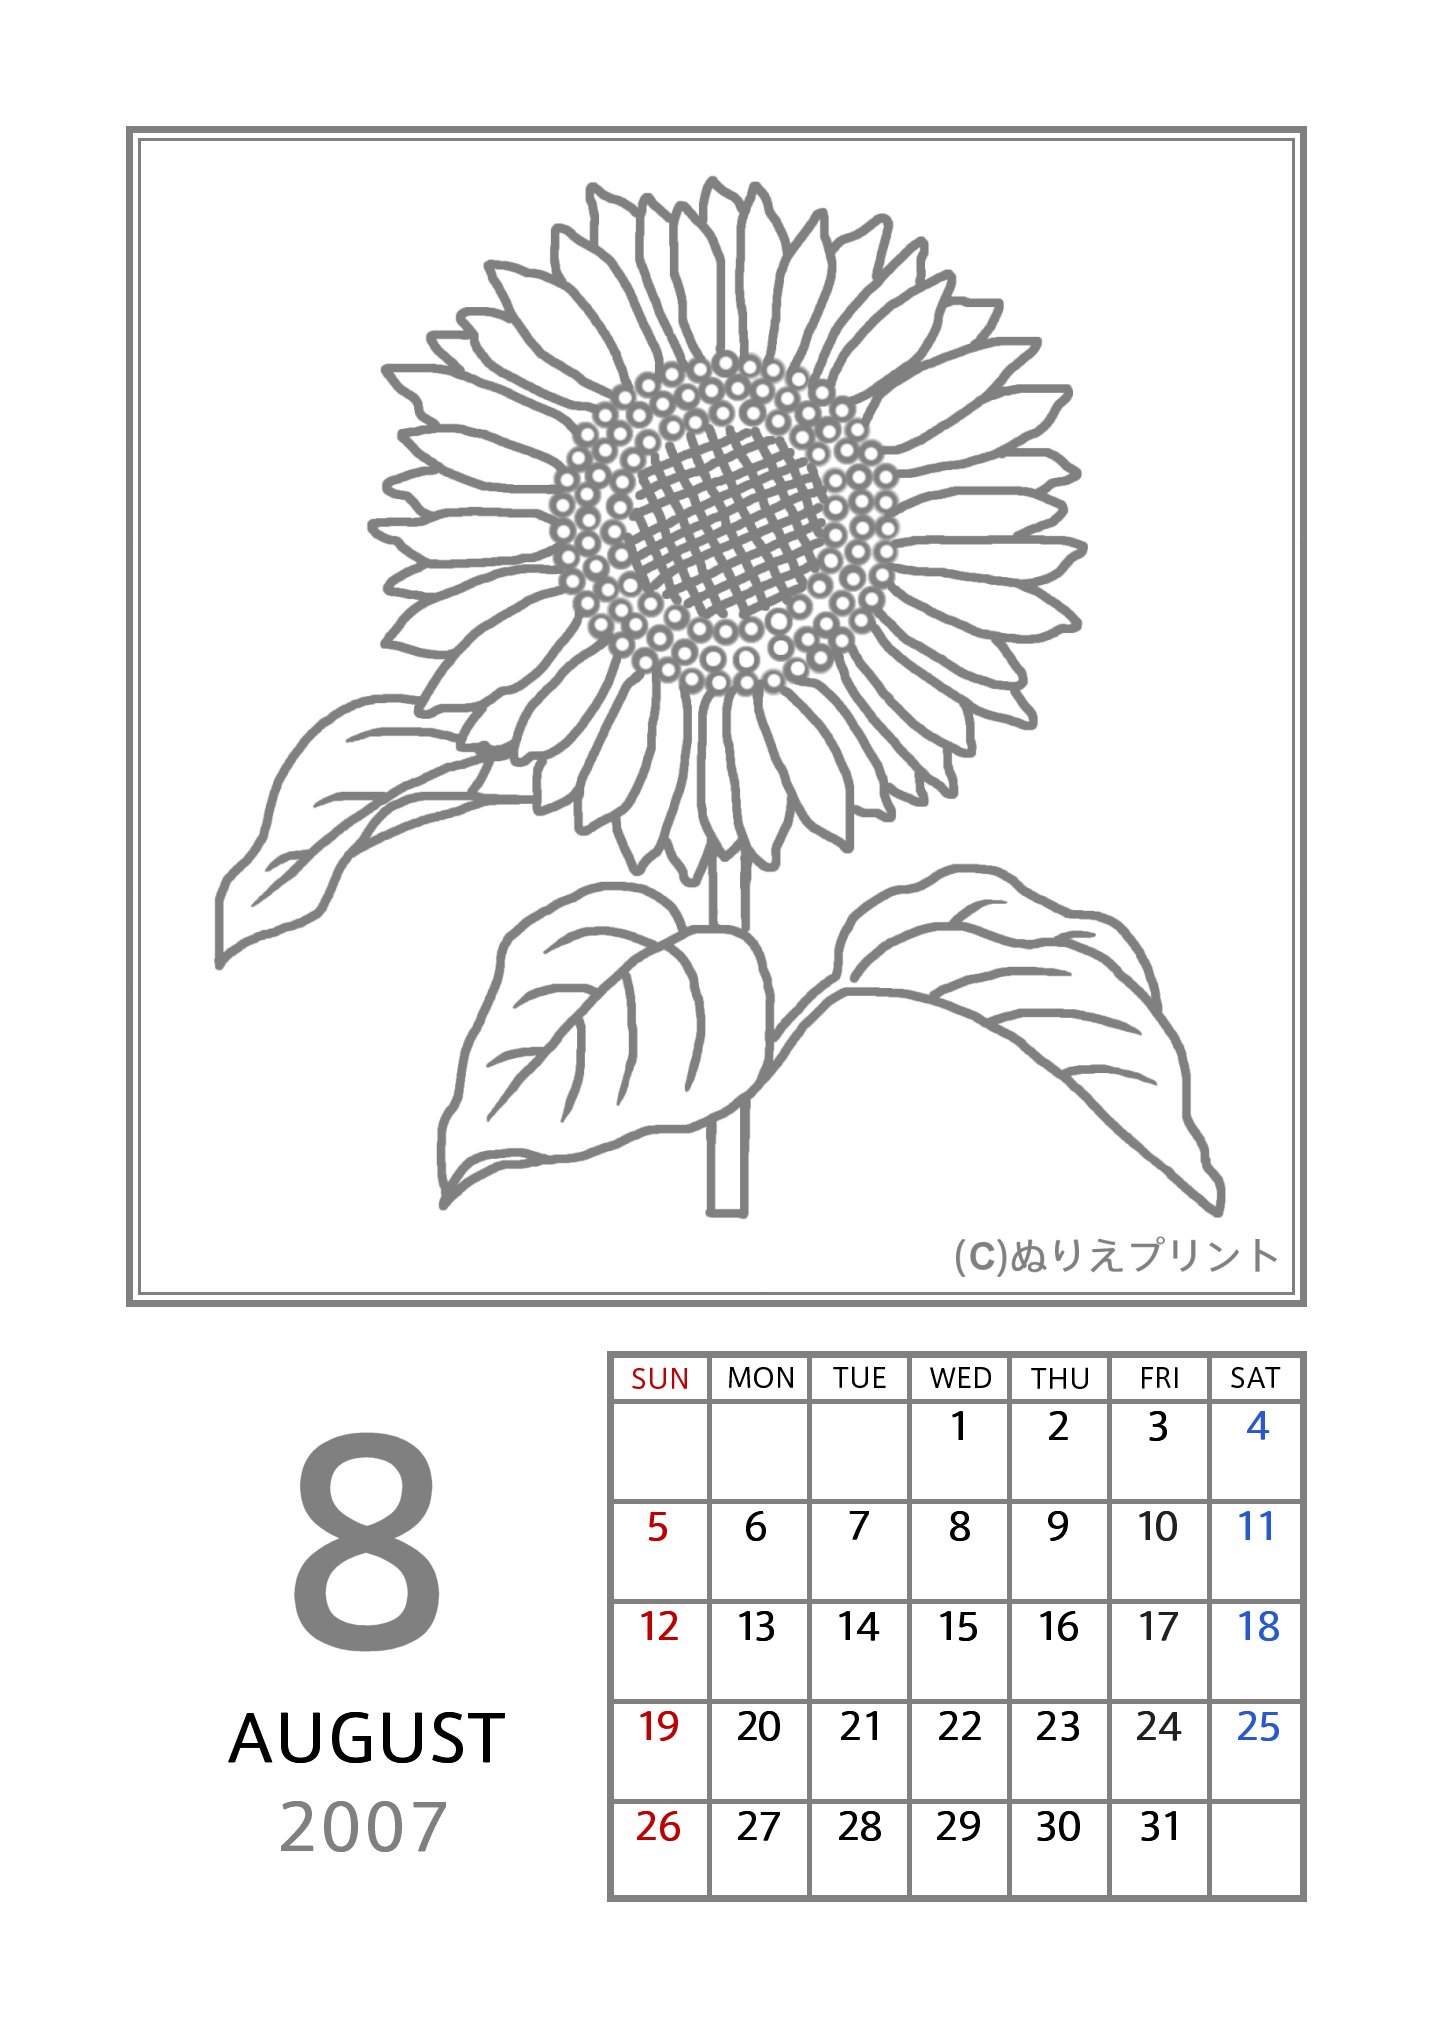 無料の塗り絵 花のぬりえカレンダー07 平成19年 8月 ヒマワリ 向日葵 ぬりえイラスト